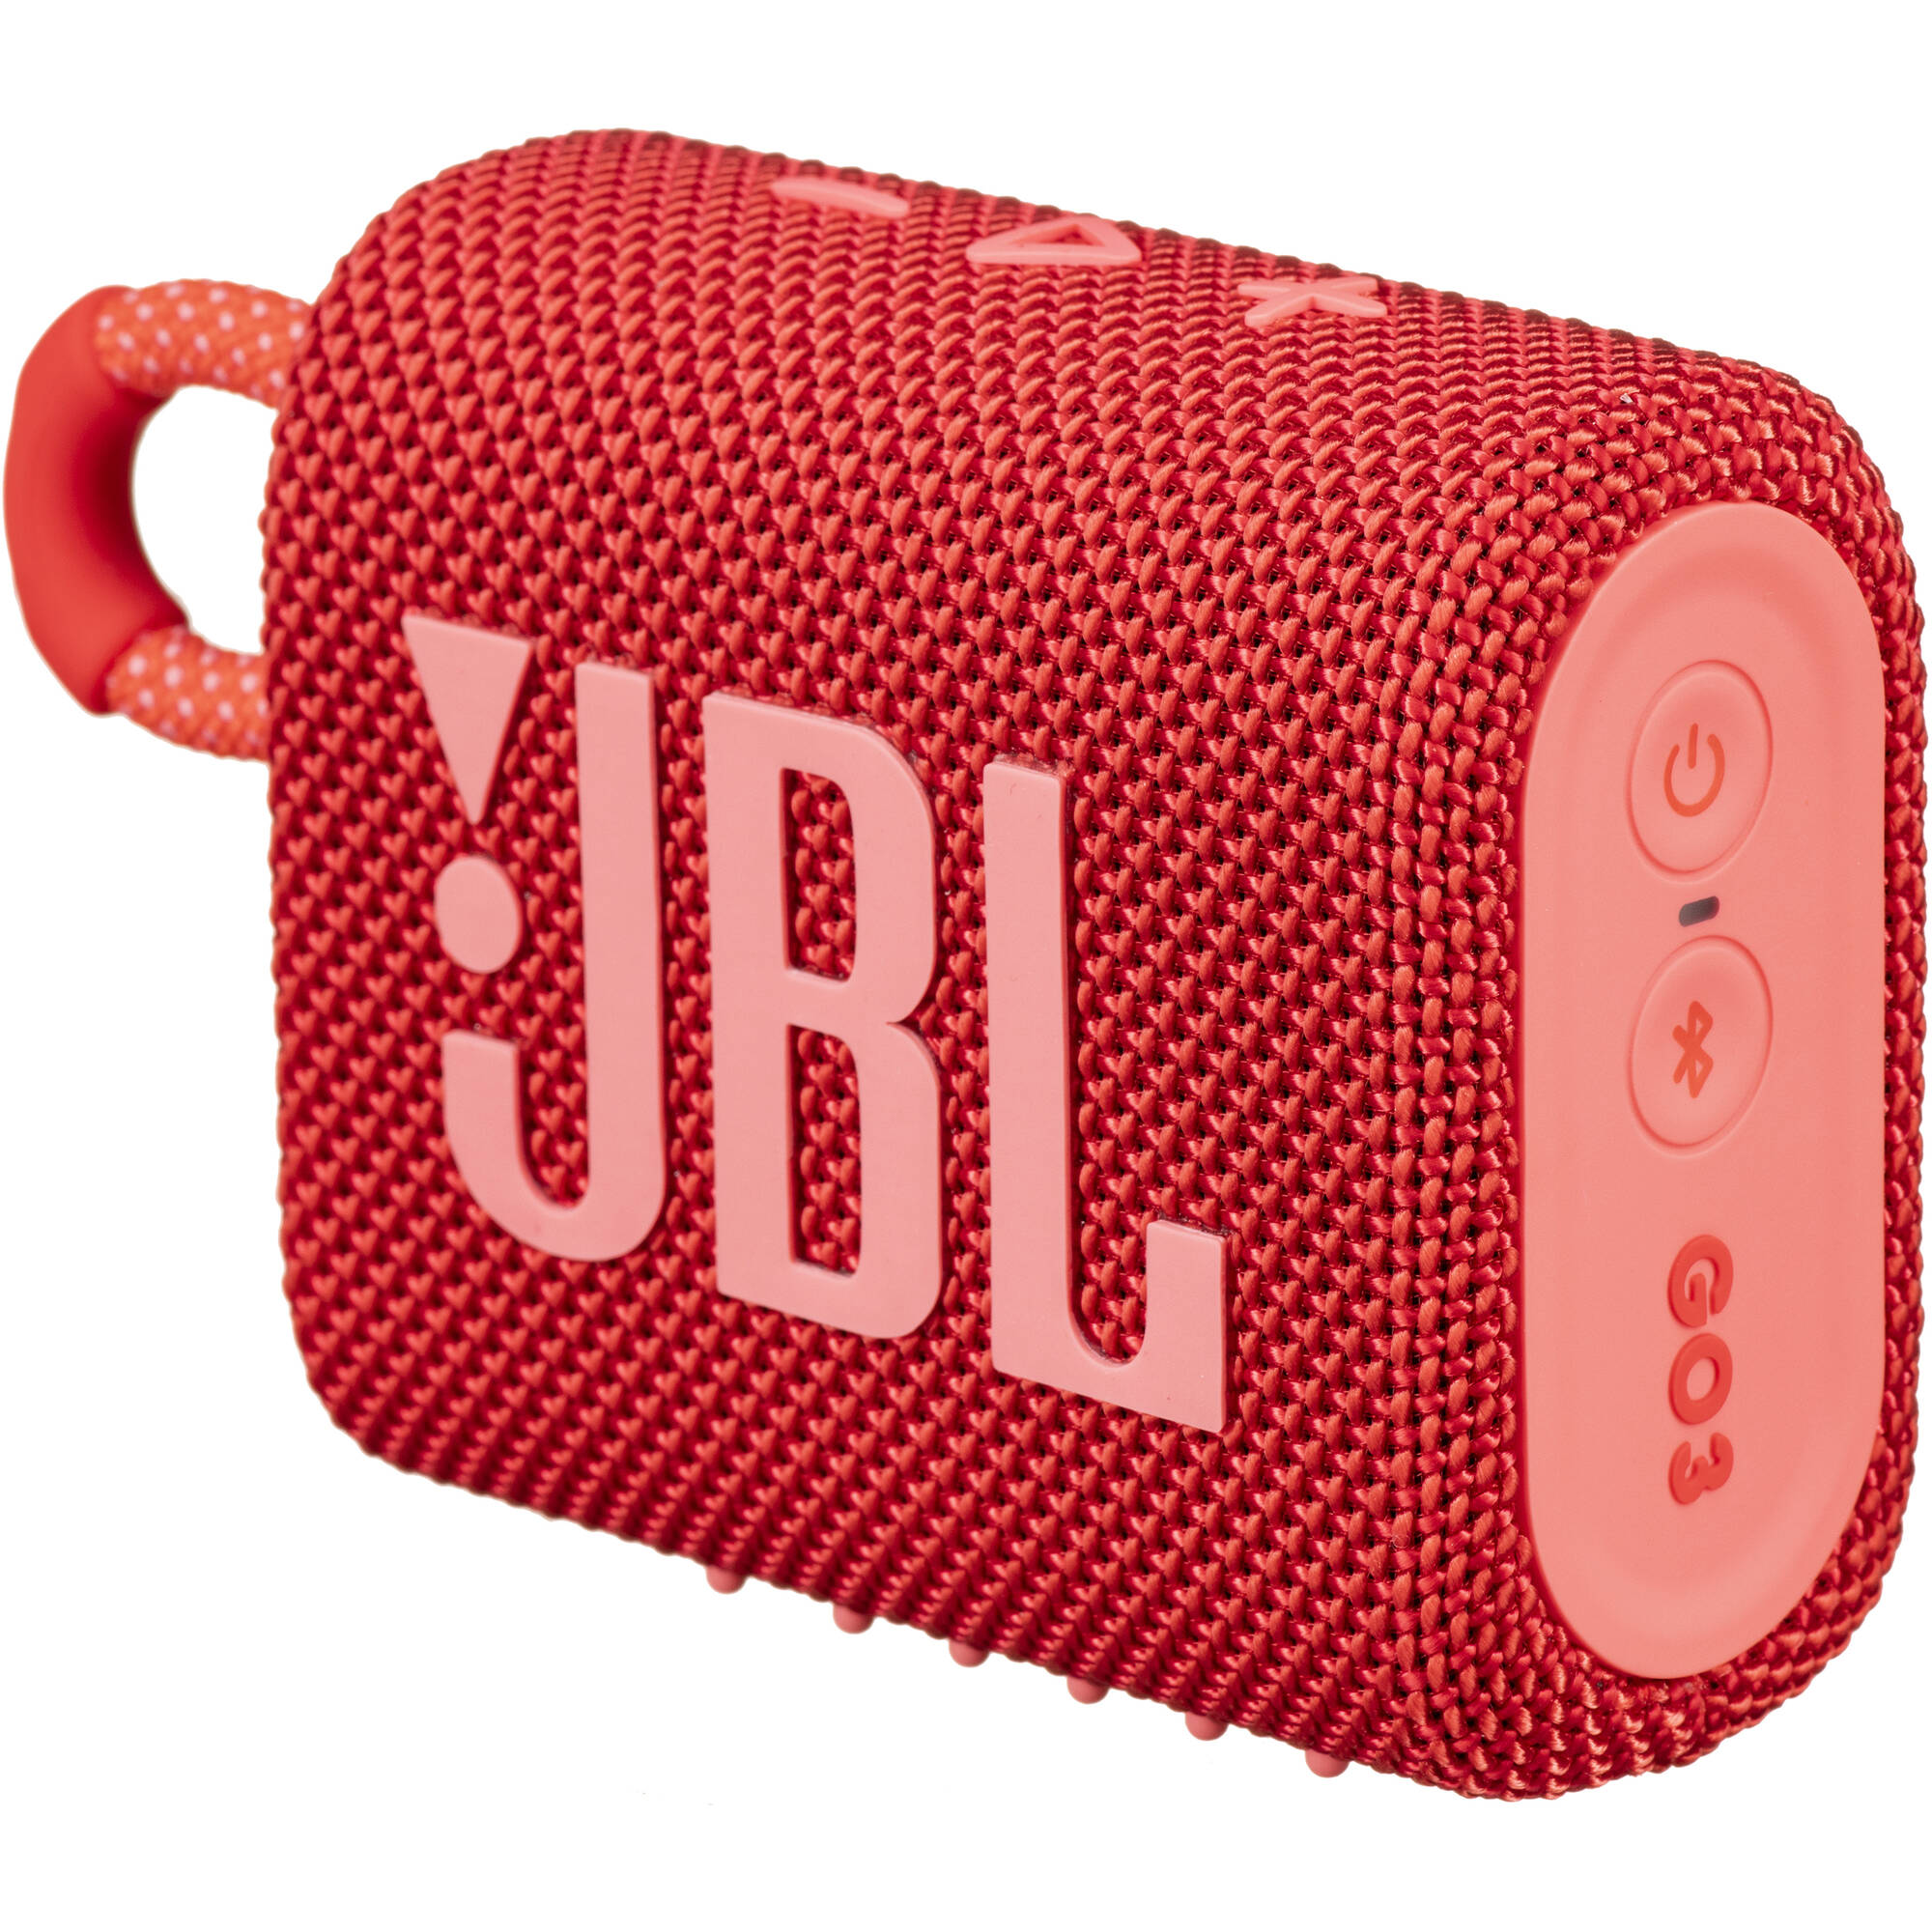 JBL Go 3 Parlante Portátil A Prueba Agua y Polvo Wireless Speaker Bluetooth Rojo - JBLGO3REDAM